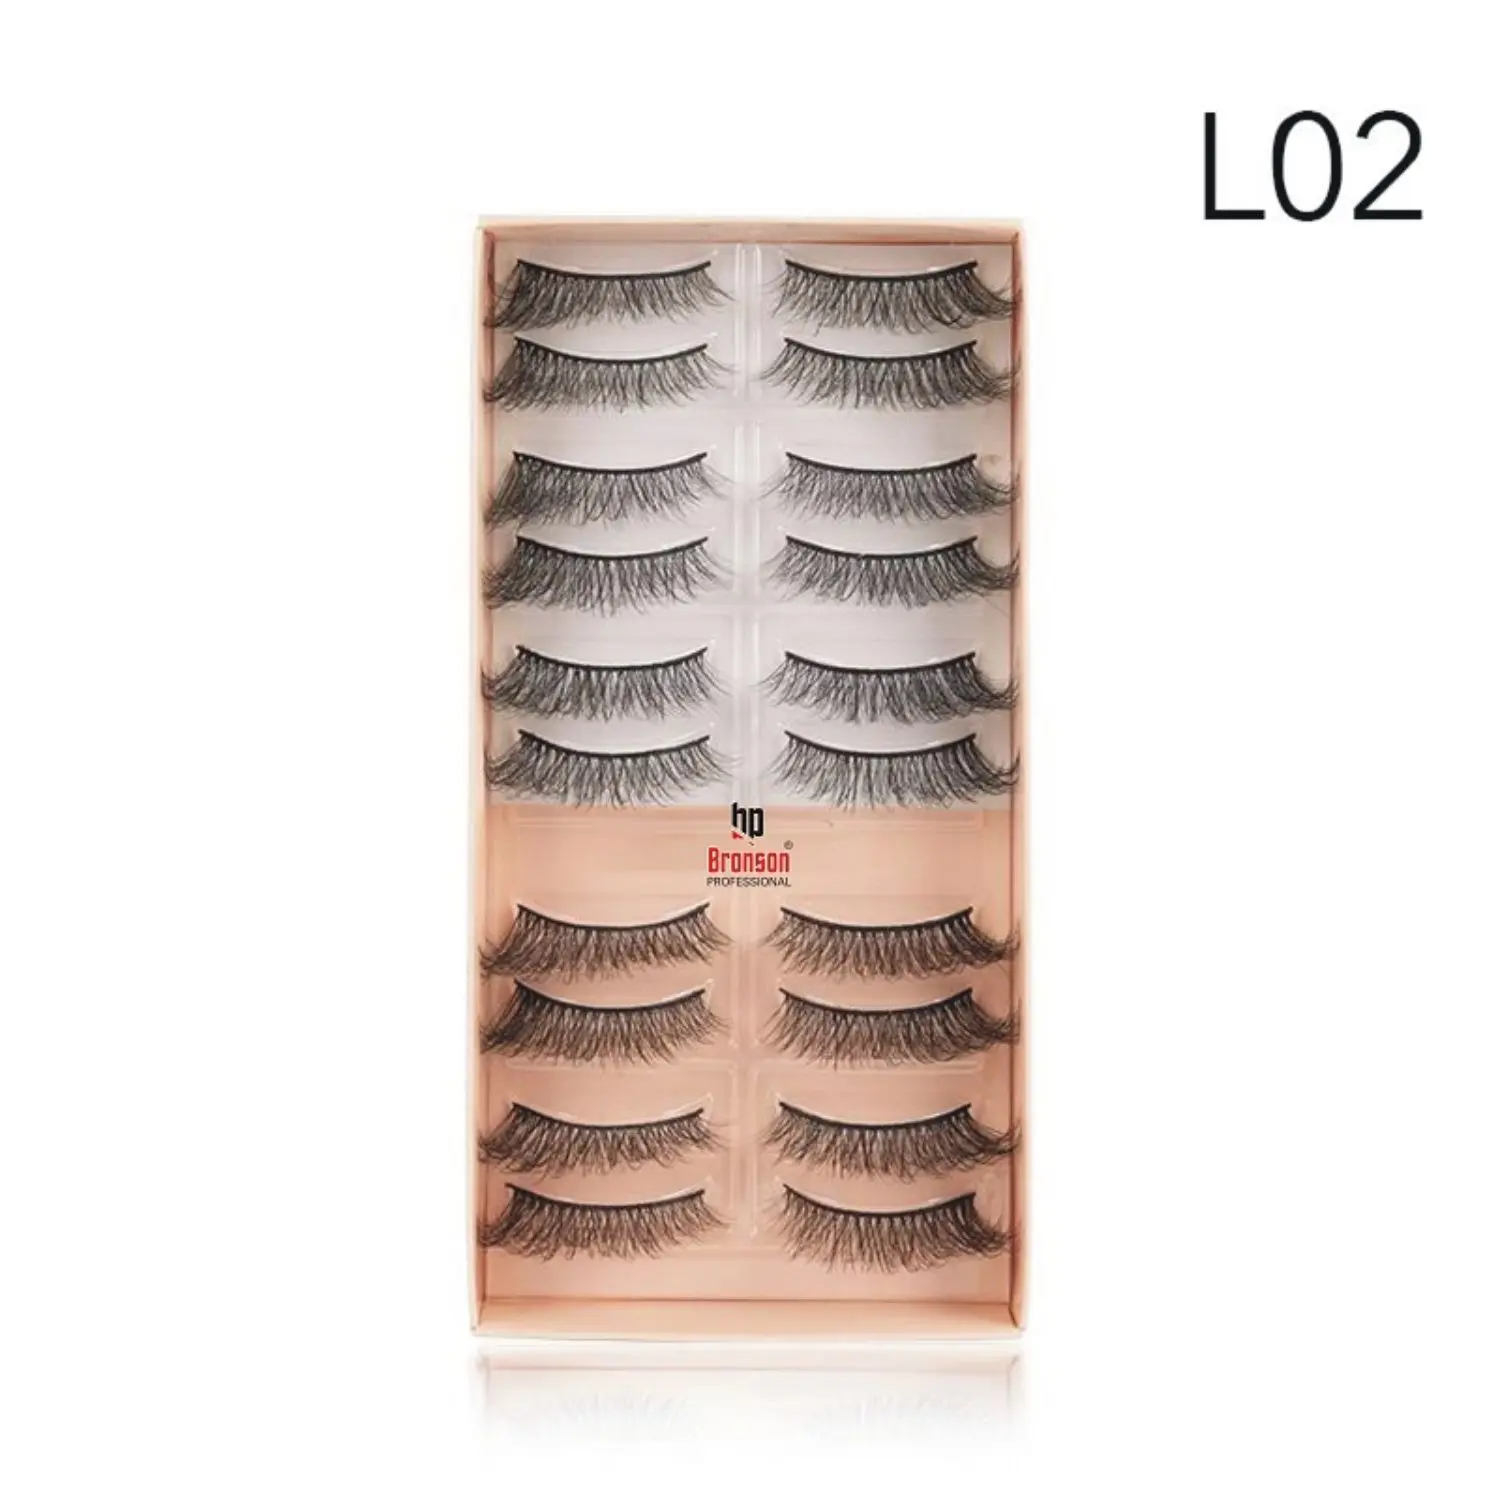 Eyelash set 3D false long and natural eye makeup 10 pairs No. L02